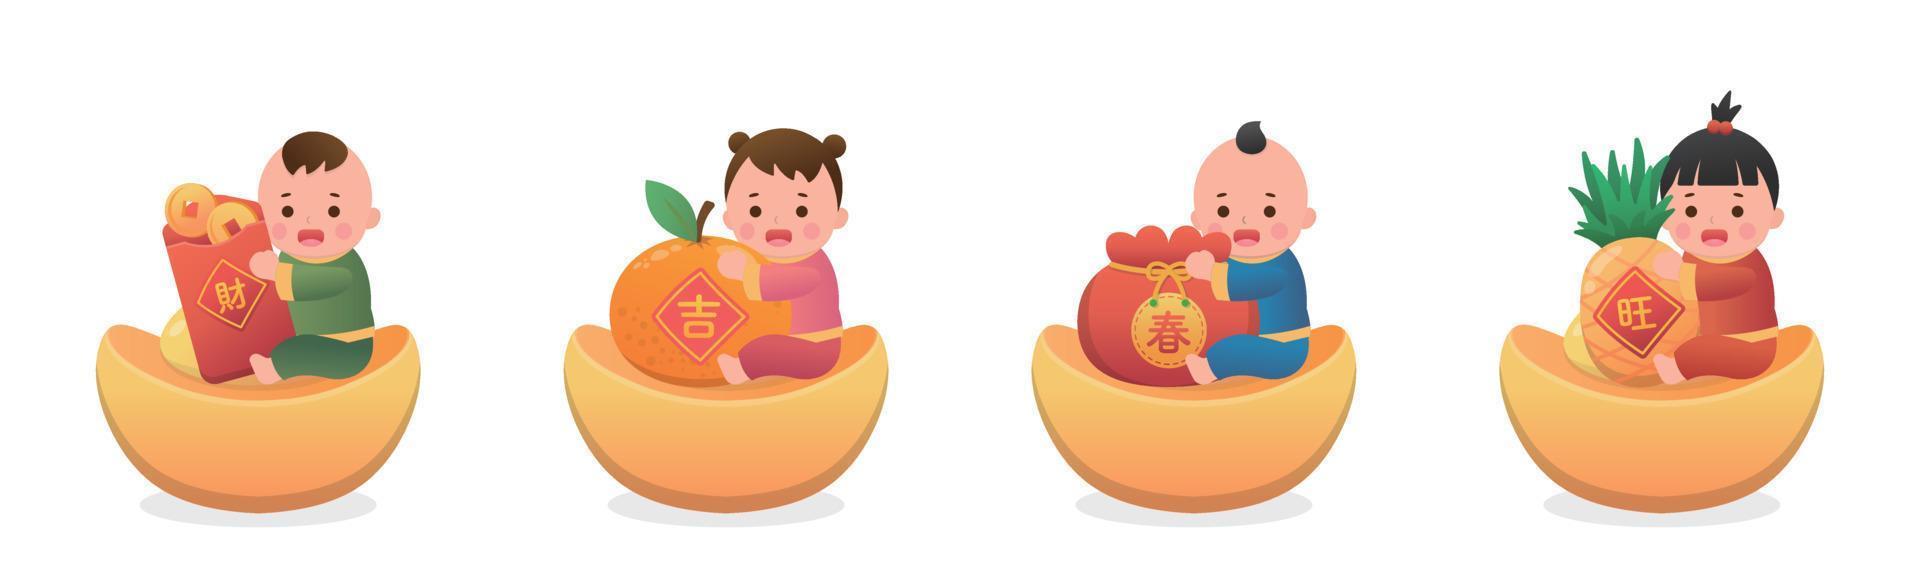 ensemble d'enfants mignons et d'éléments du nouvel an lunaire chinois, lingot d'or et sac en papier rouge, style de dessin animé vectoriel